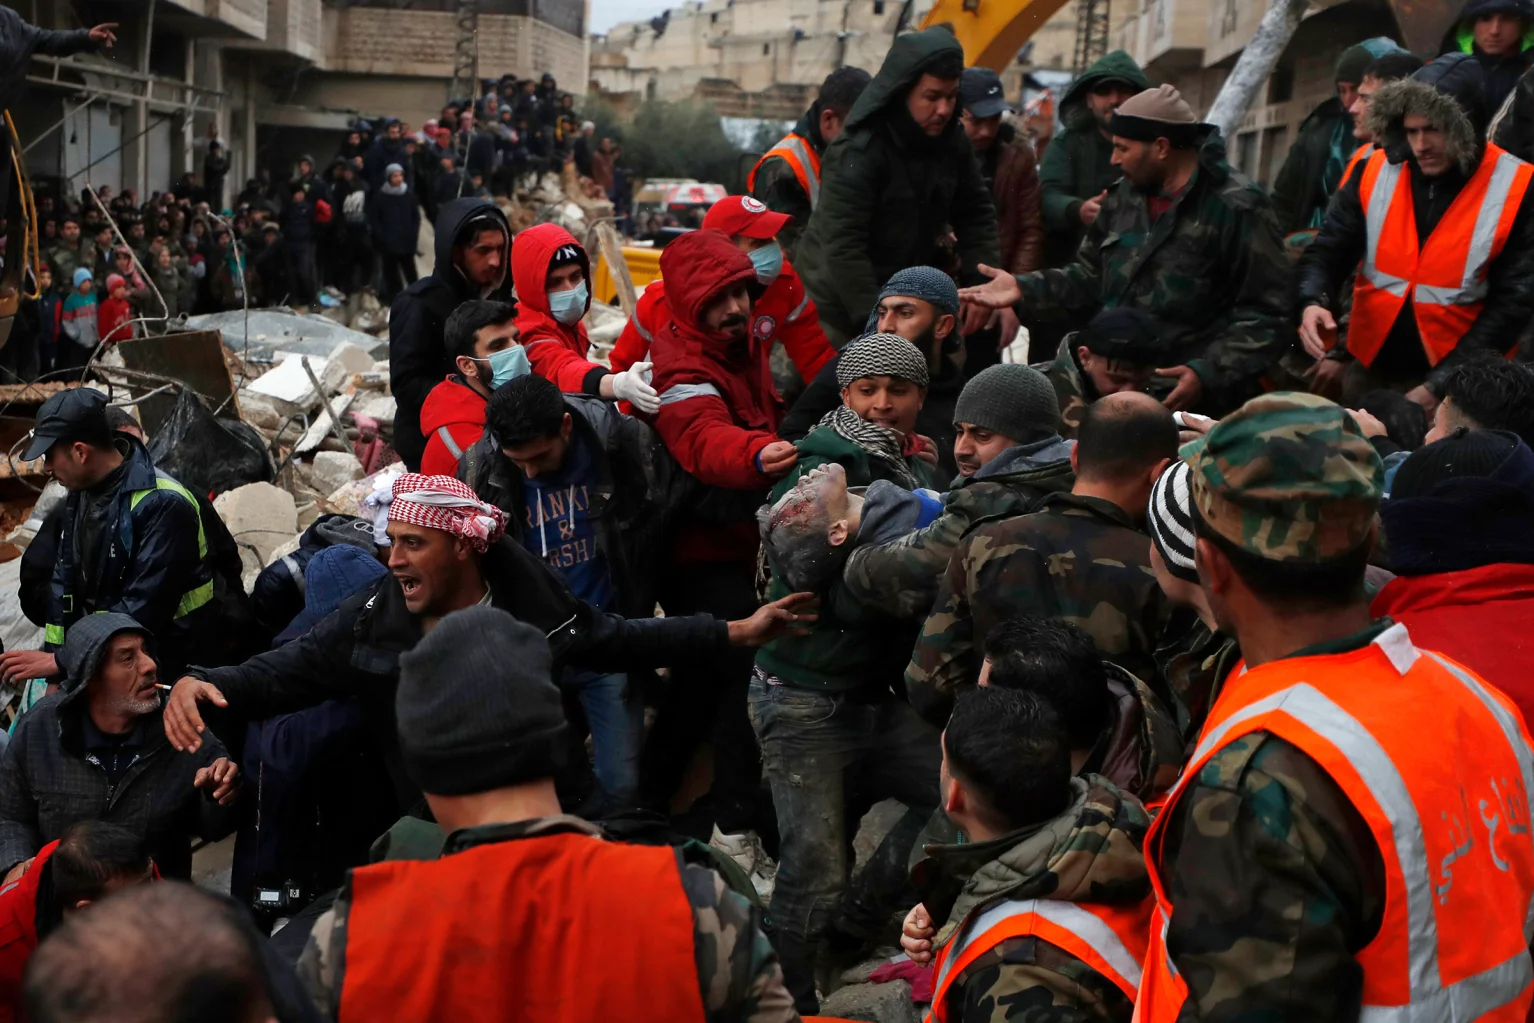 Chùm ảnh hiện trường và nỗ lực cứu hộ sau trận động đất ở Thổ Nhĩ Kỳ và Syria - Ảnh 12.